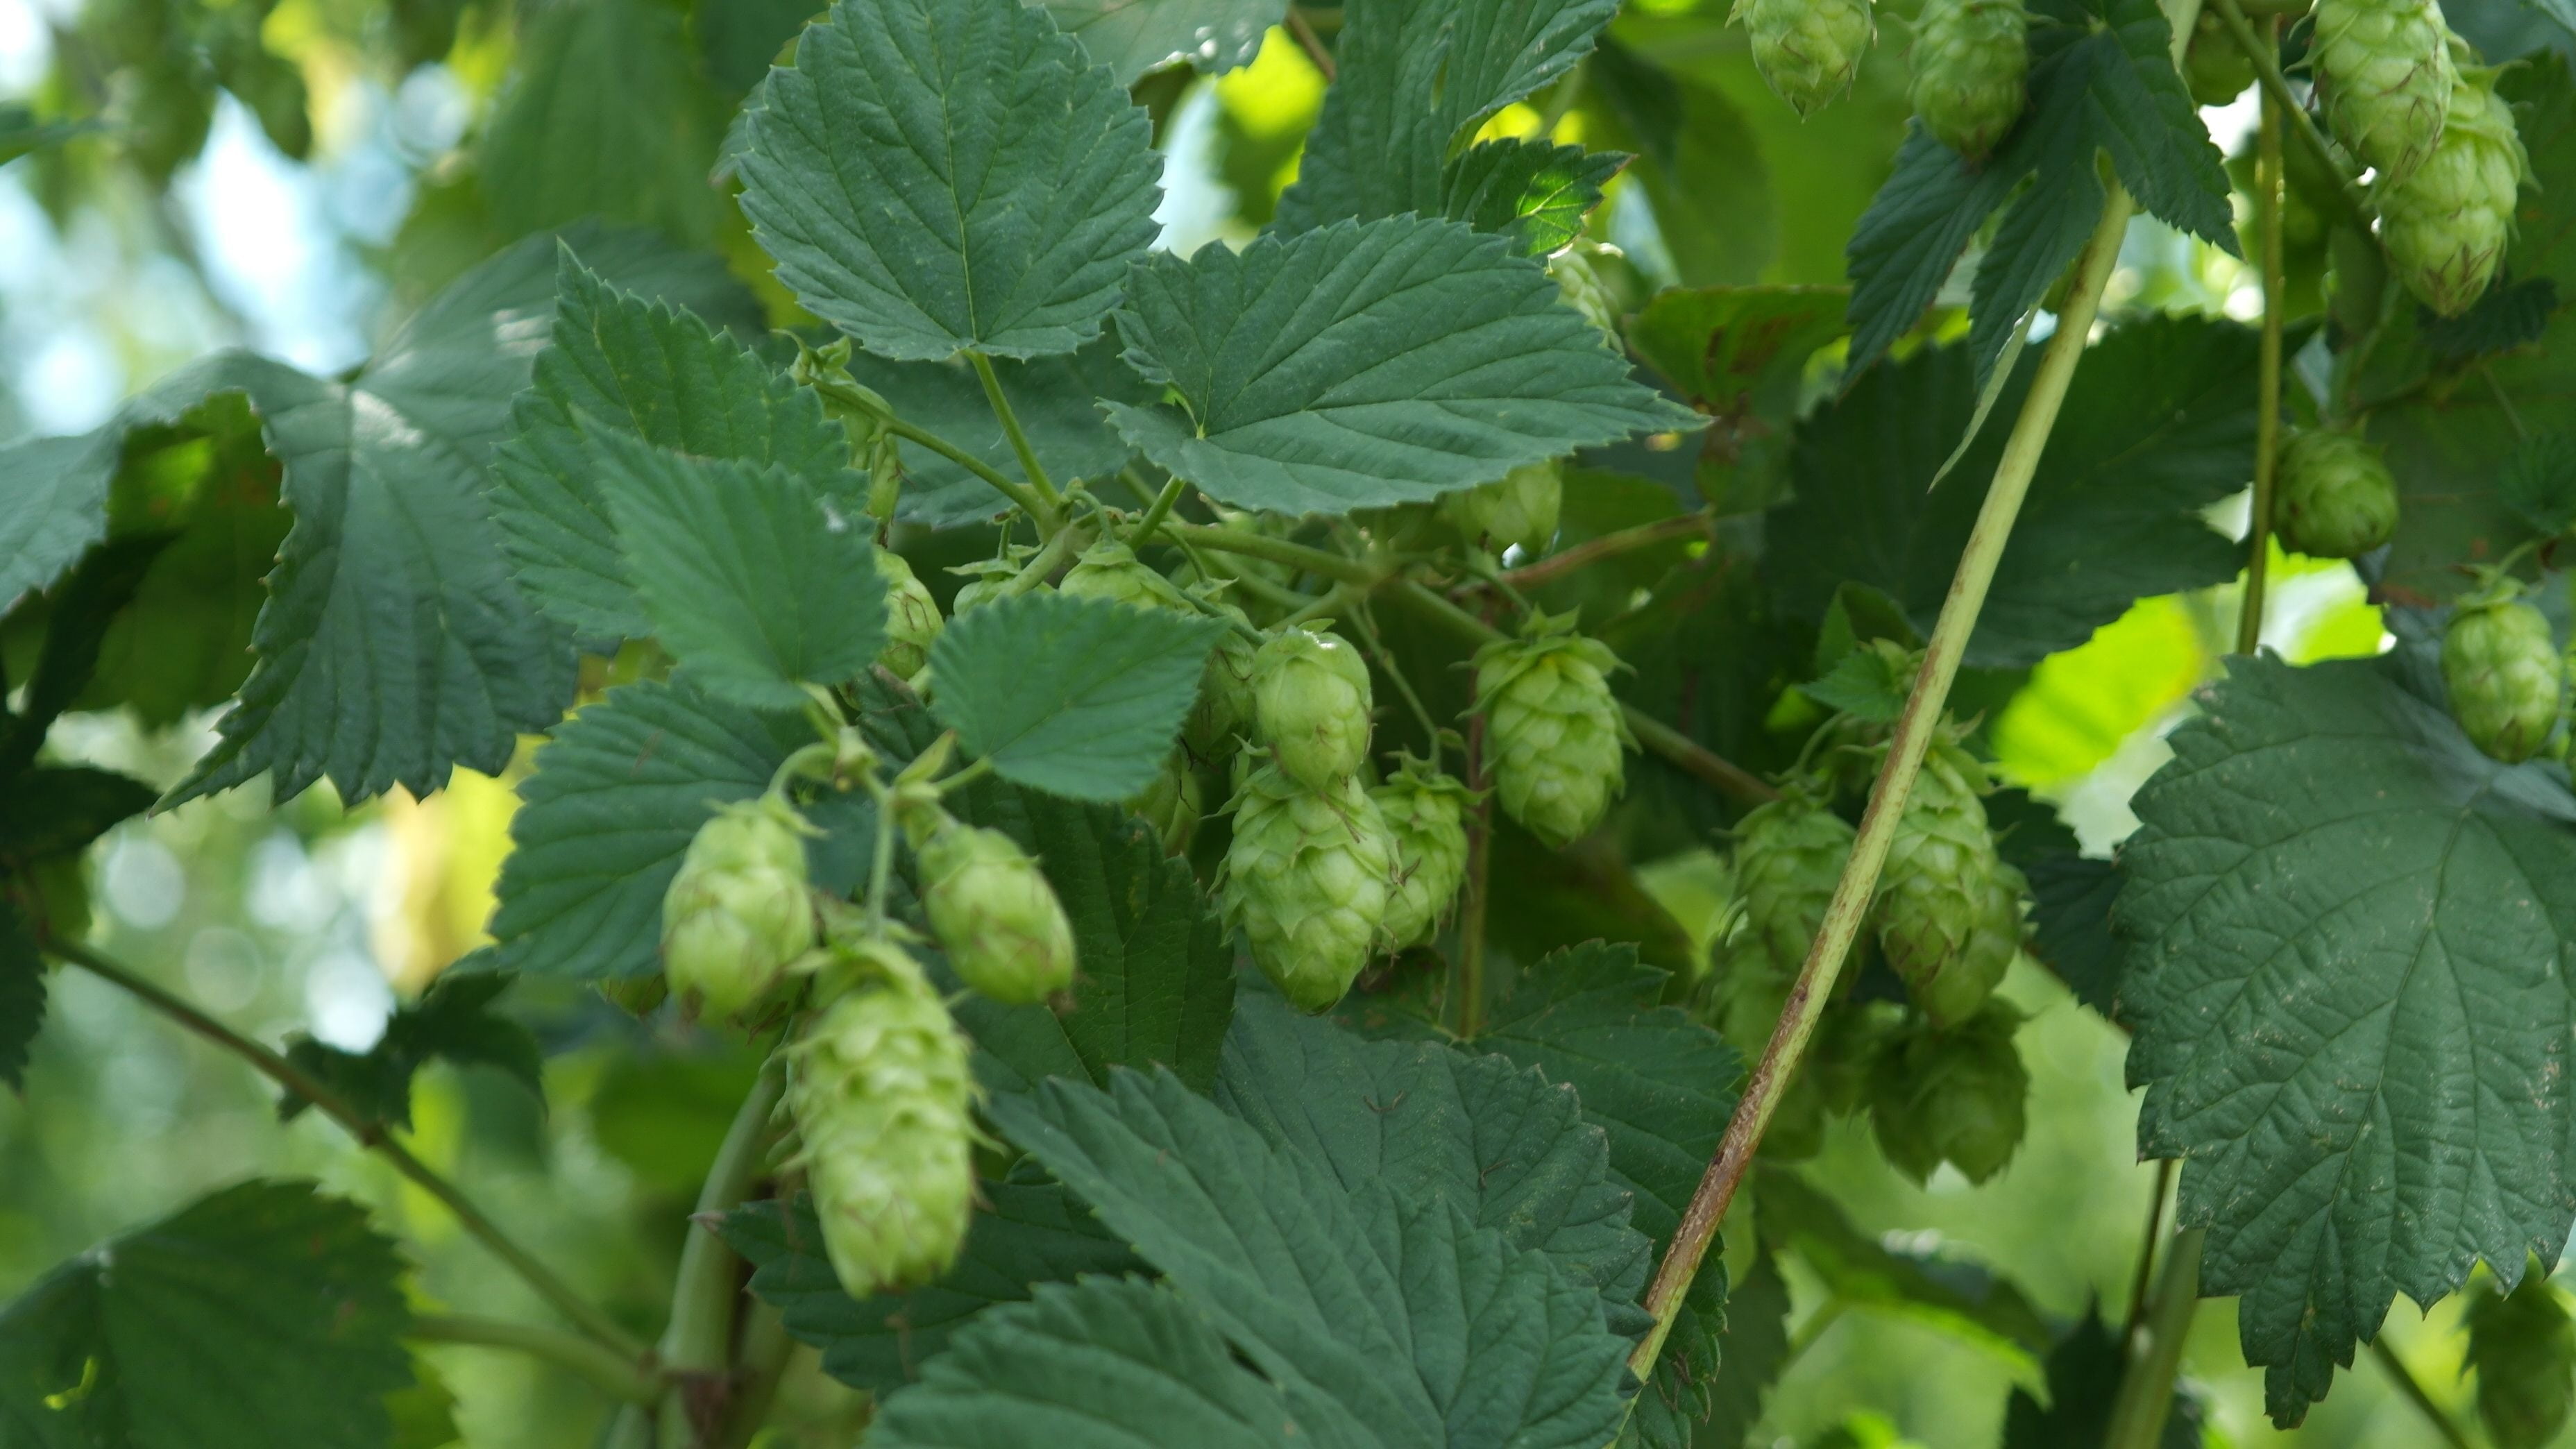 hops, beer, hopfendolde, brew, green, bavaria, leaf, plant part